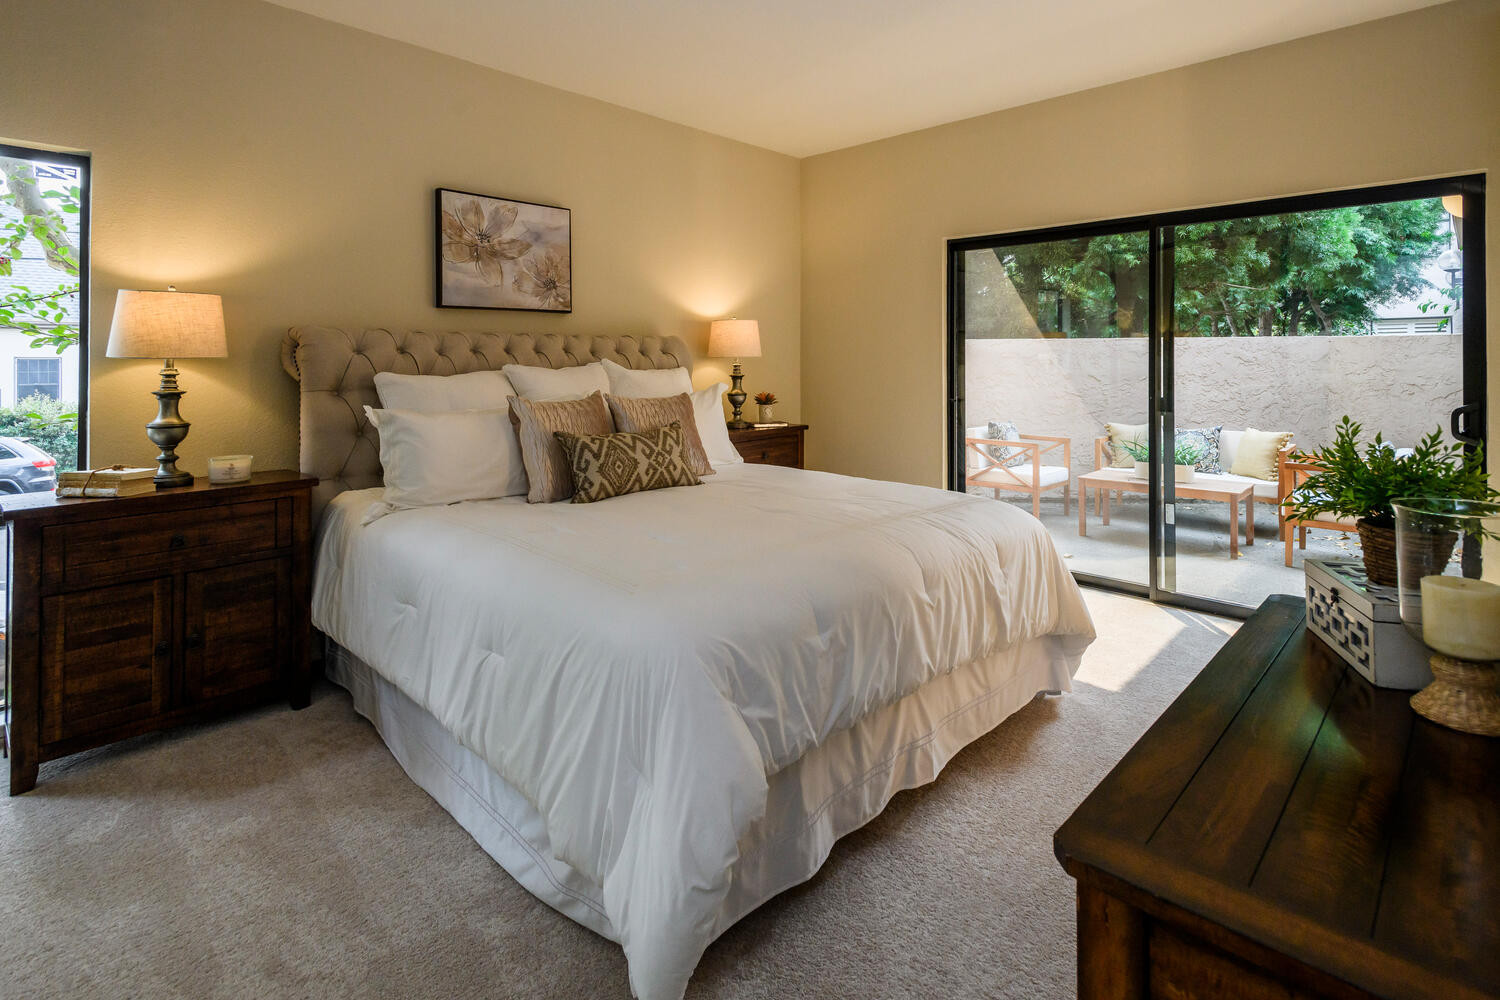 111 9th Avenue Bedroom in Hayward Park Area in San Mateo.